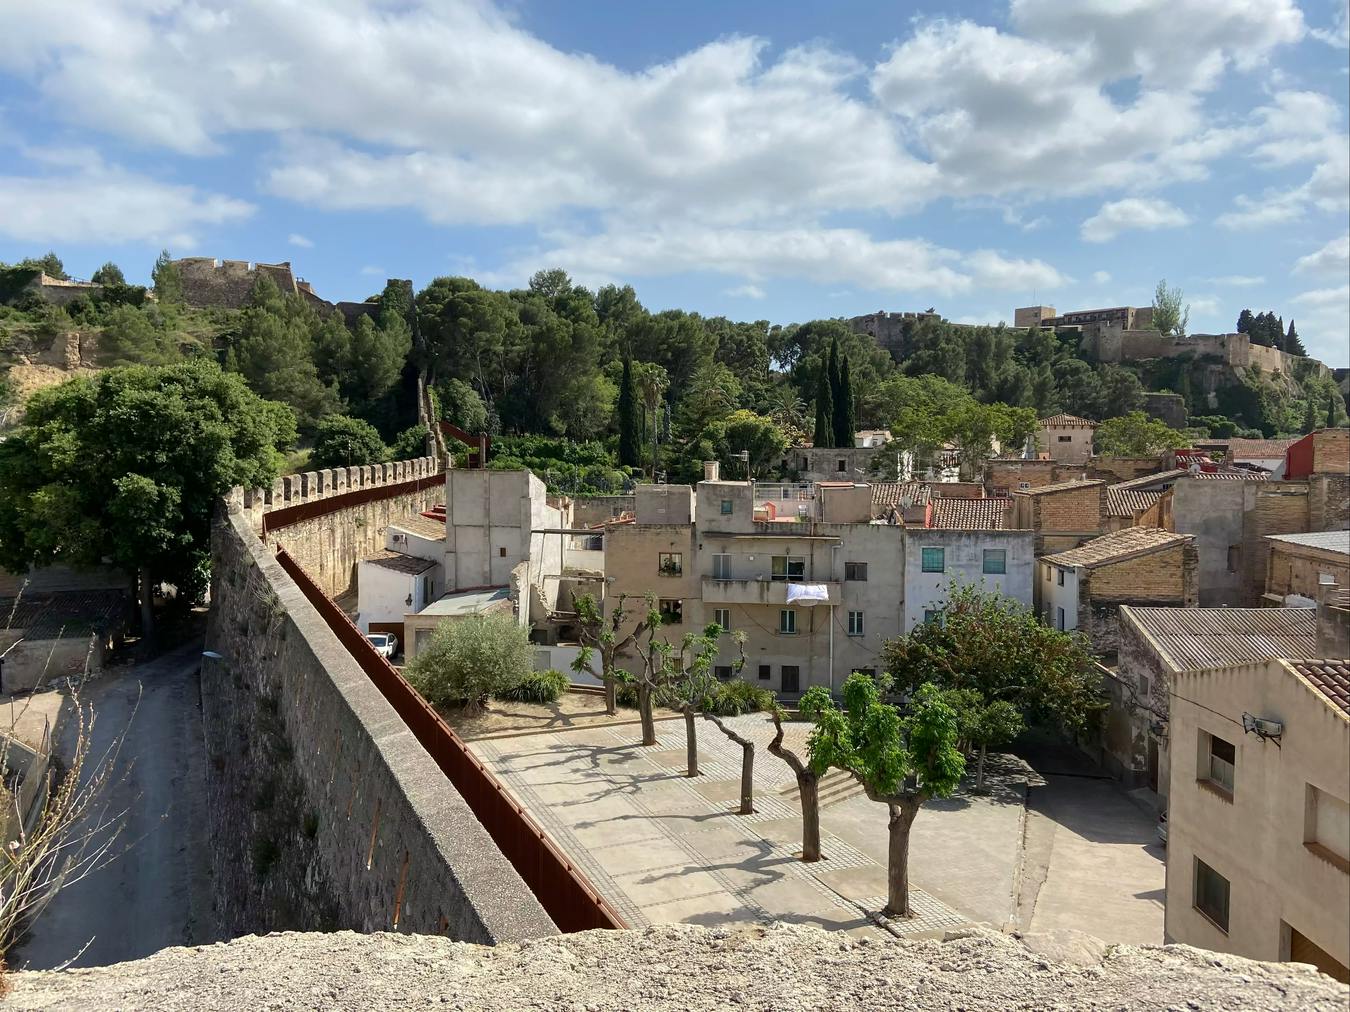 Vistas desde la torre de la Muralla Remolins, Tortosa.